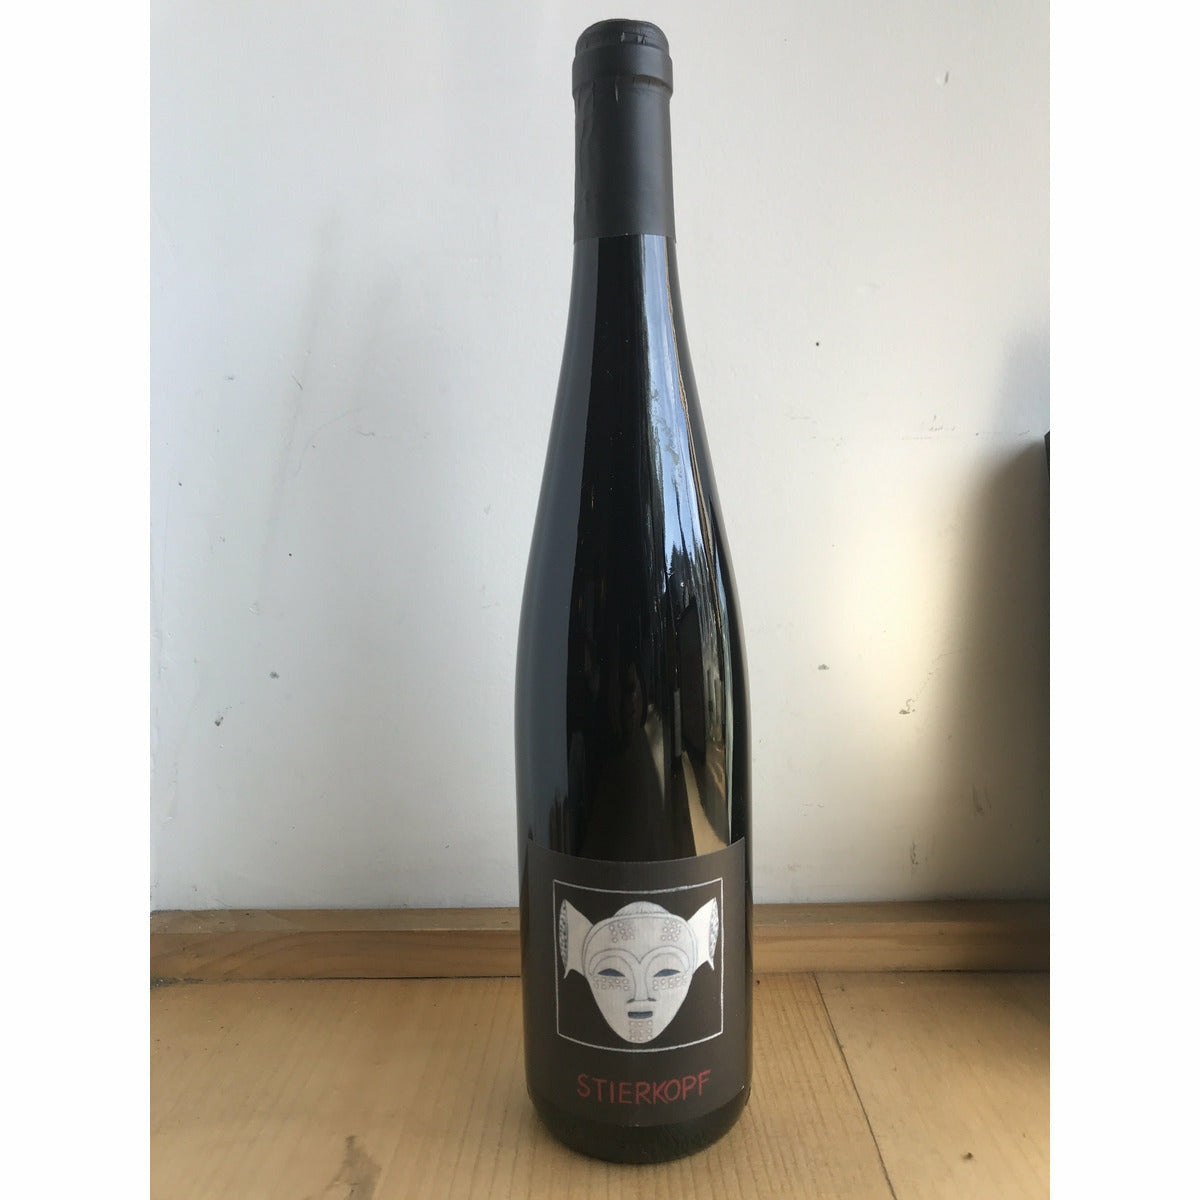 Domaine Rietsch Stierkopf Pinot Noir 2018